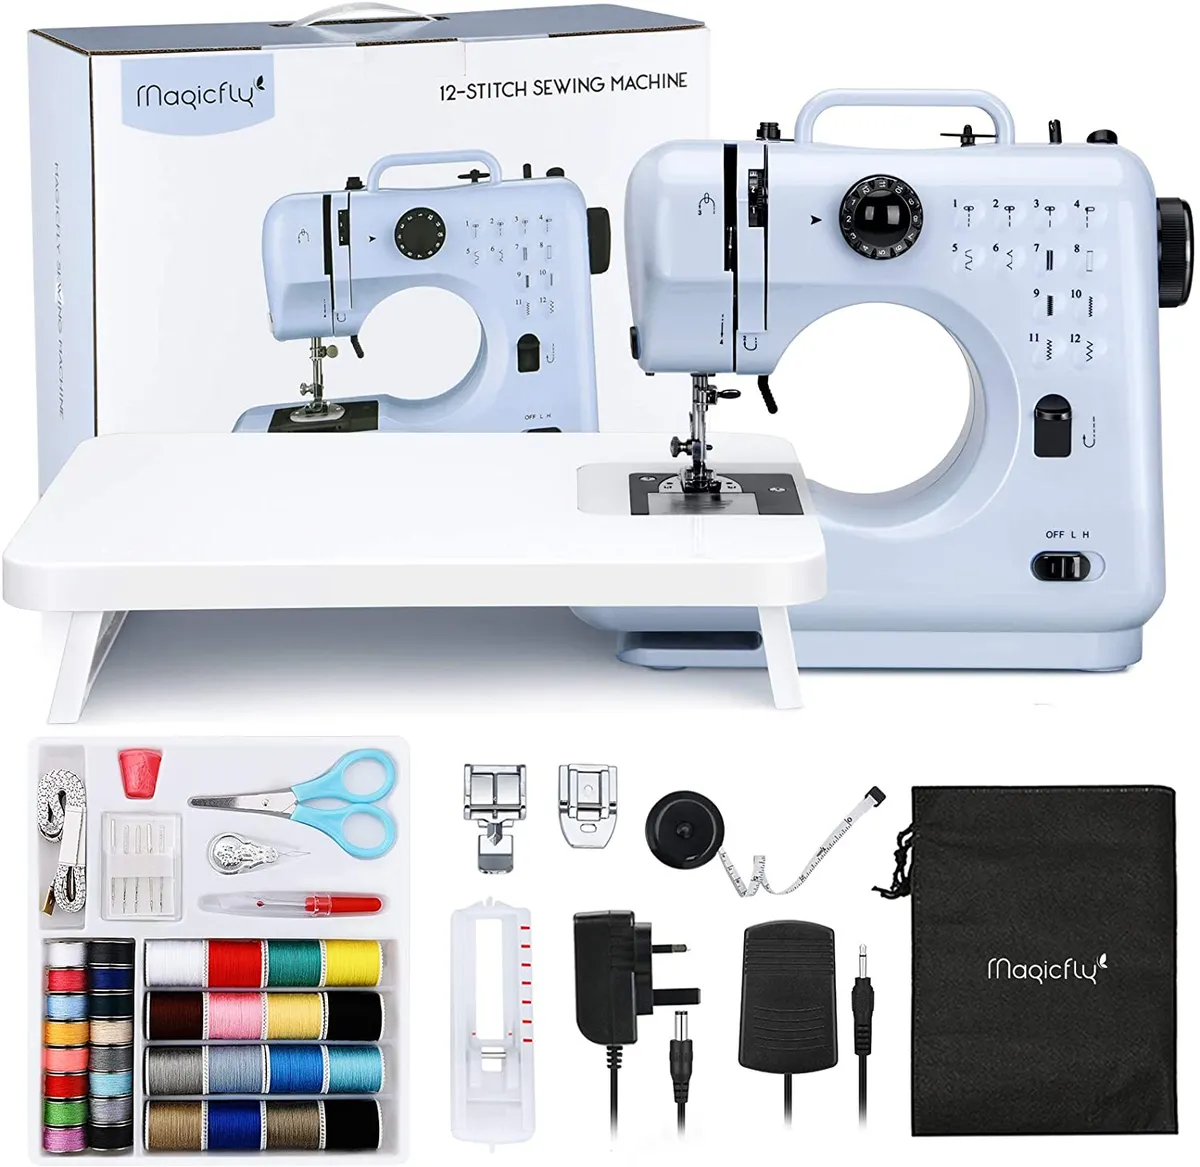 Sewing Starter Essentials Kit